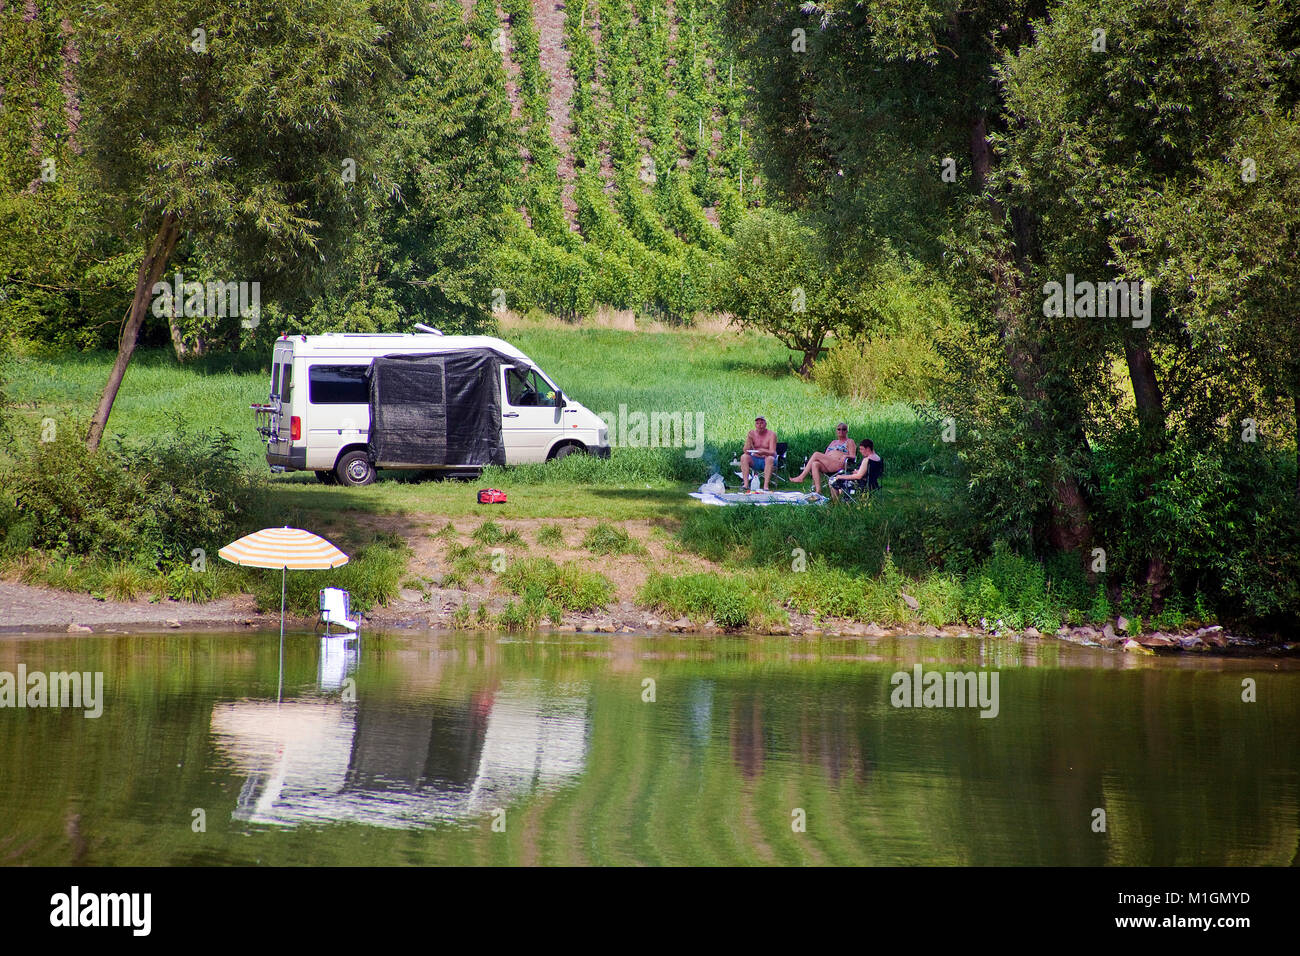 Wildes Campen am Flußufer, Menschen im Schatten eines Baumes sitzend, Mosel bei Traben-Trarbach, Mosel, Rheinland-Pfalz, Deutschland, Europa Stockfoto